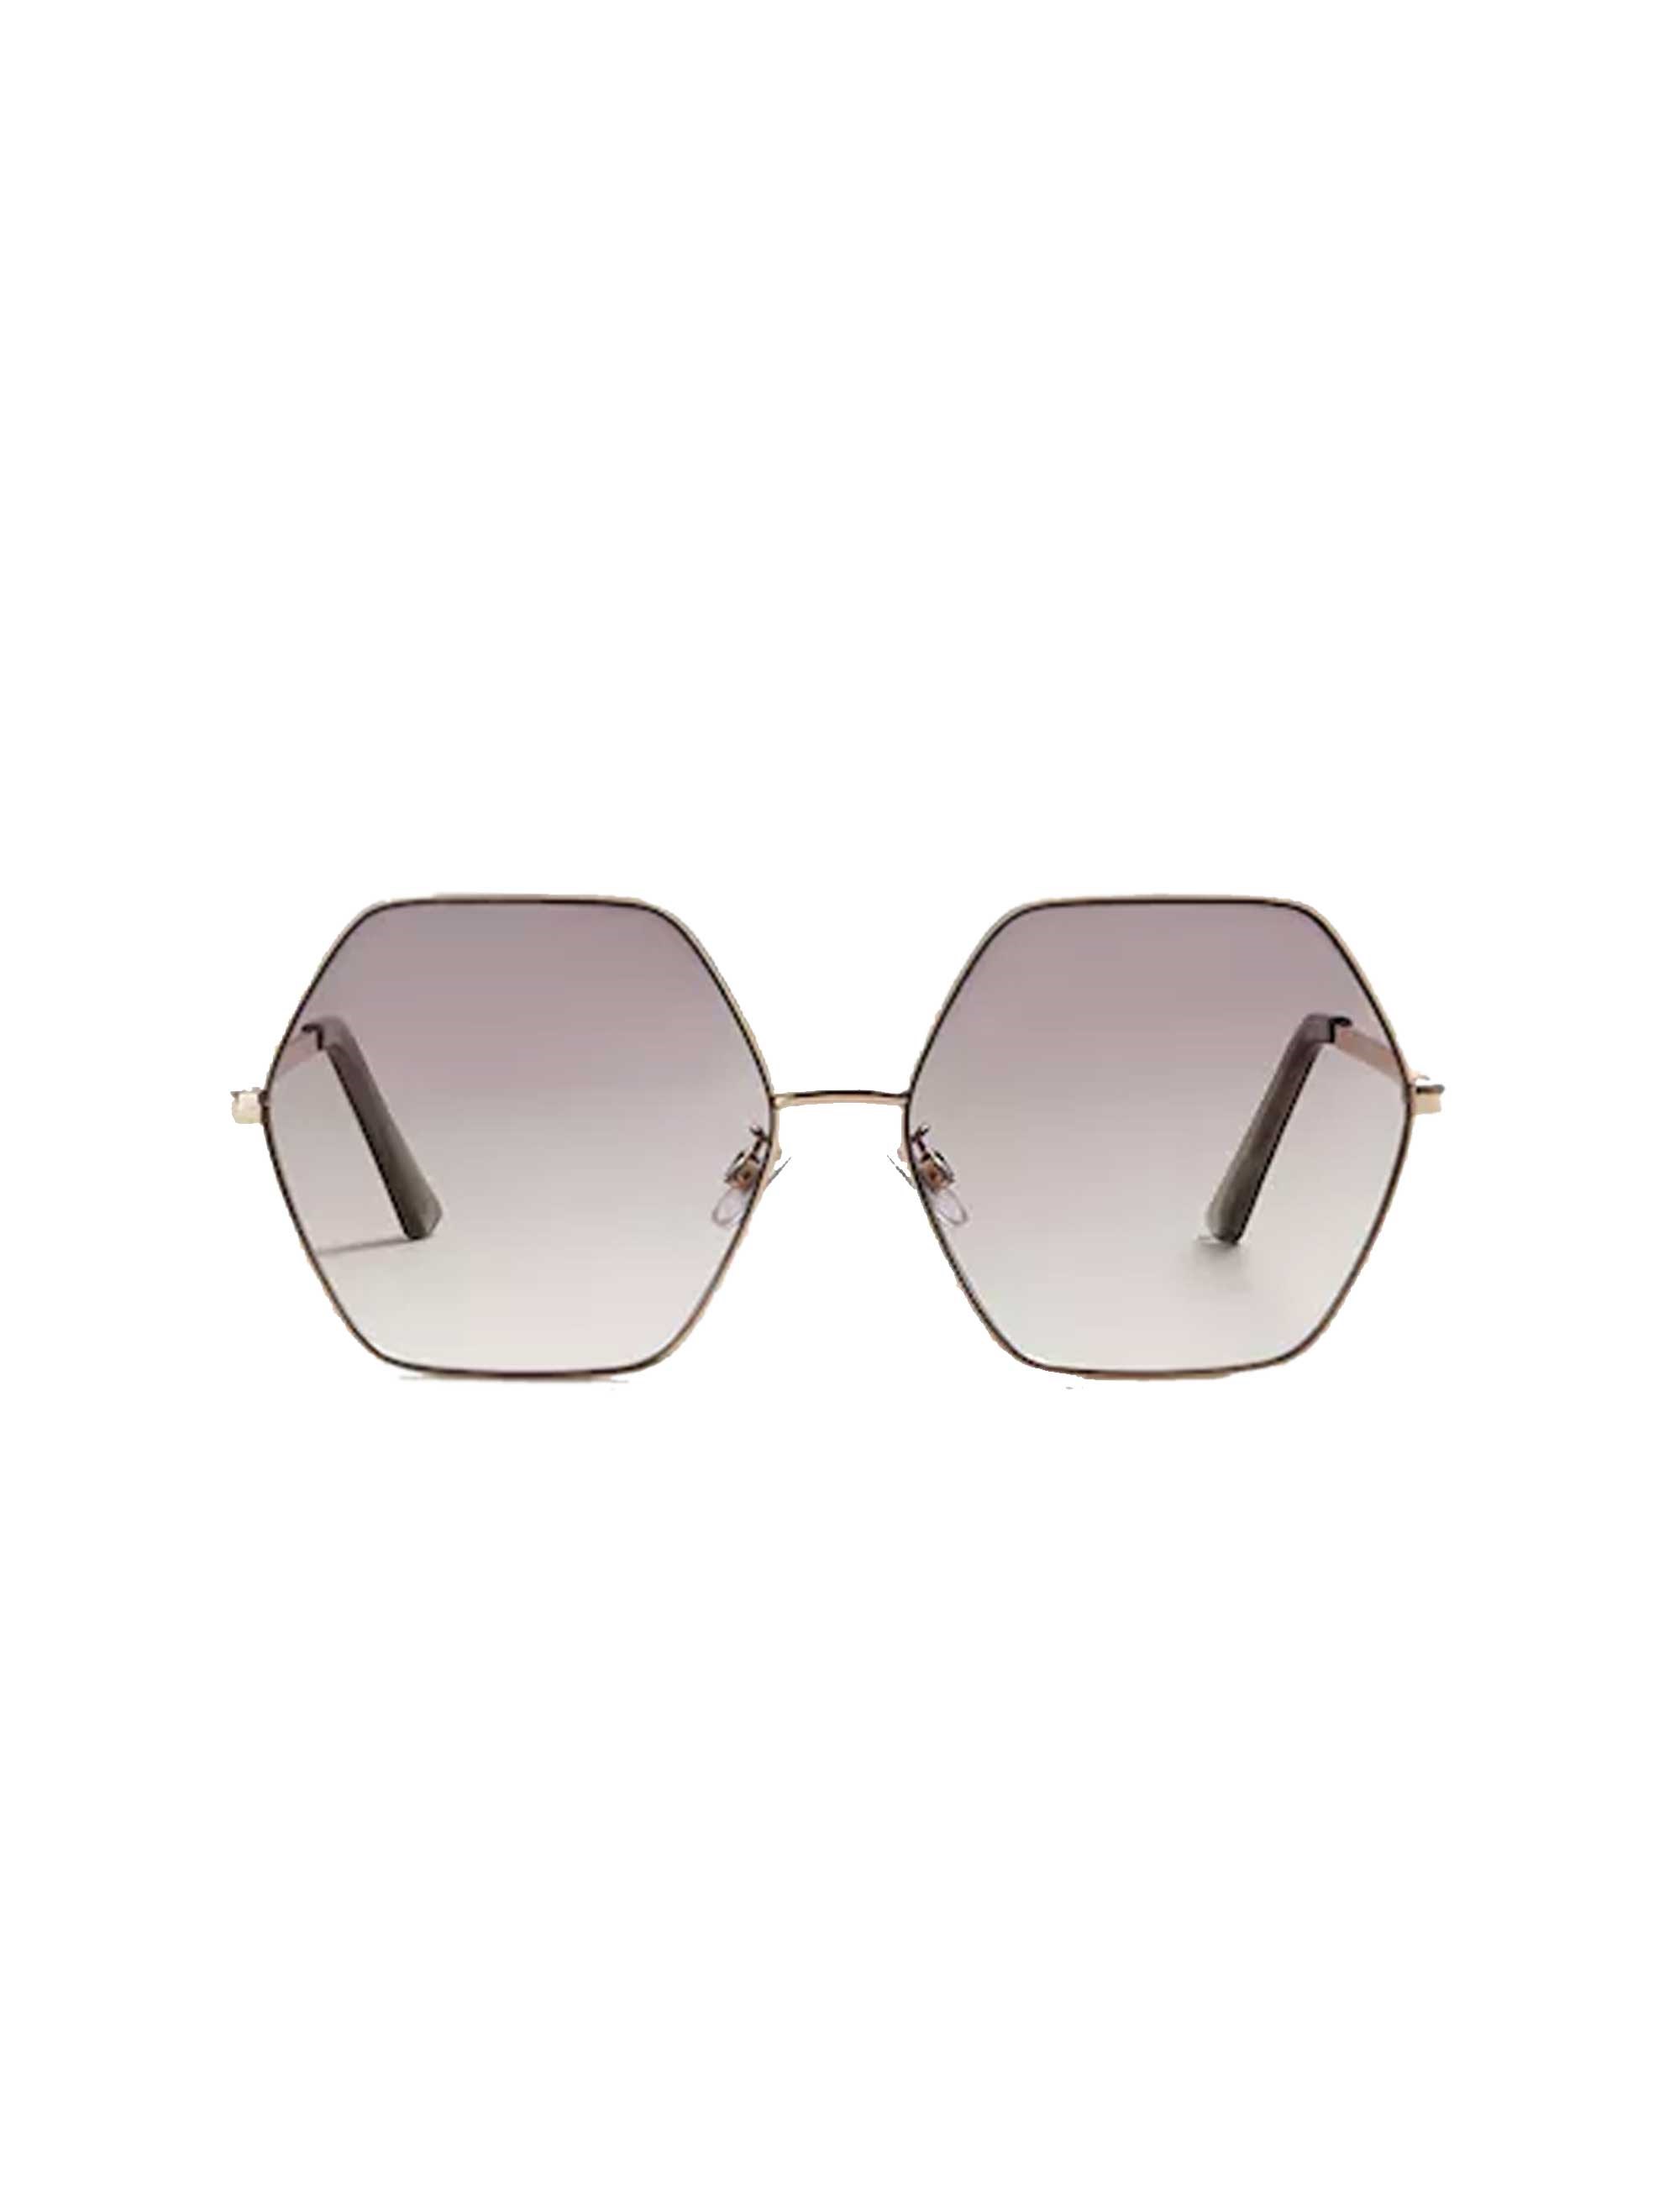 عینک آفتابی چند ضلعی زنانه - مانگو تک سایز - طلايي - 1